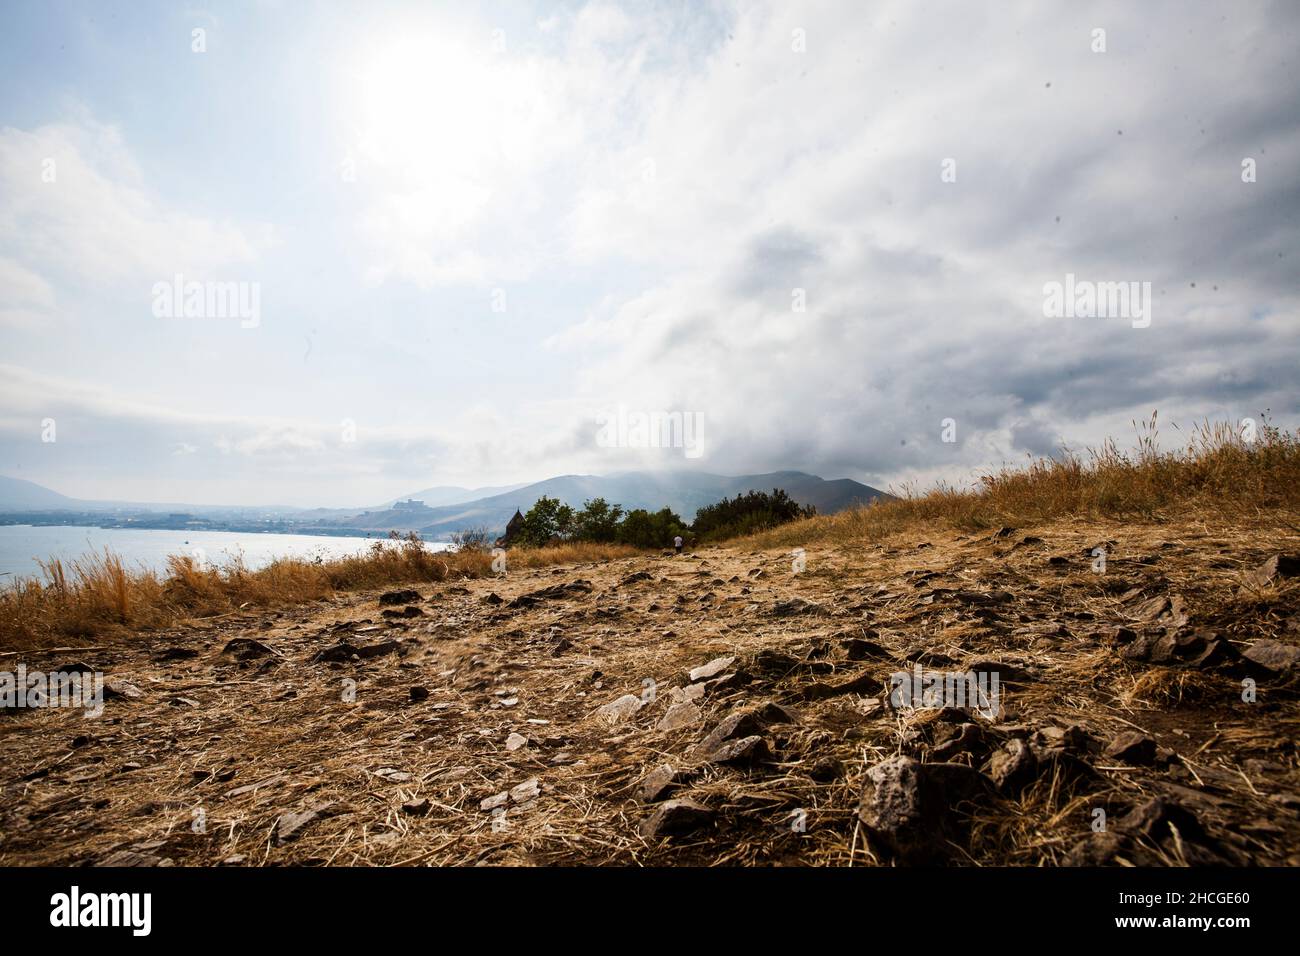 Vistas al paisaje de un lago y las montañas en un día nublado Foto de stock